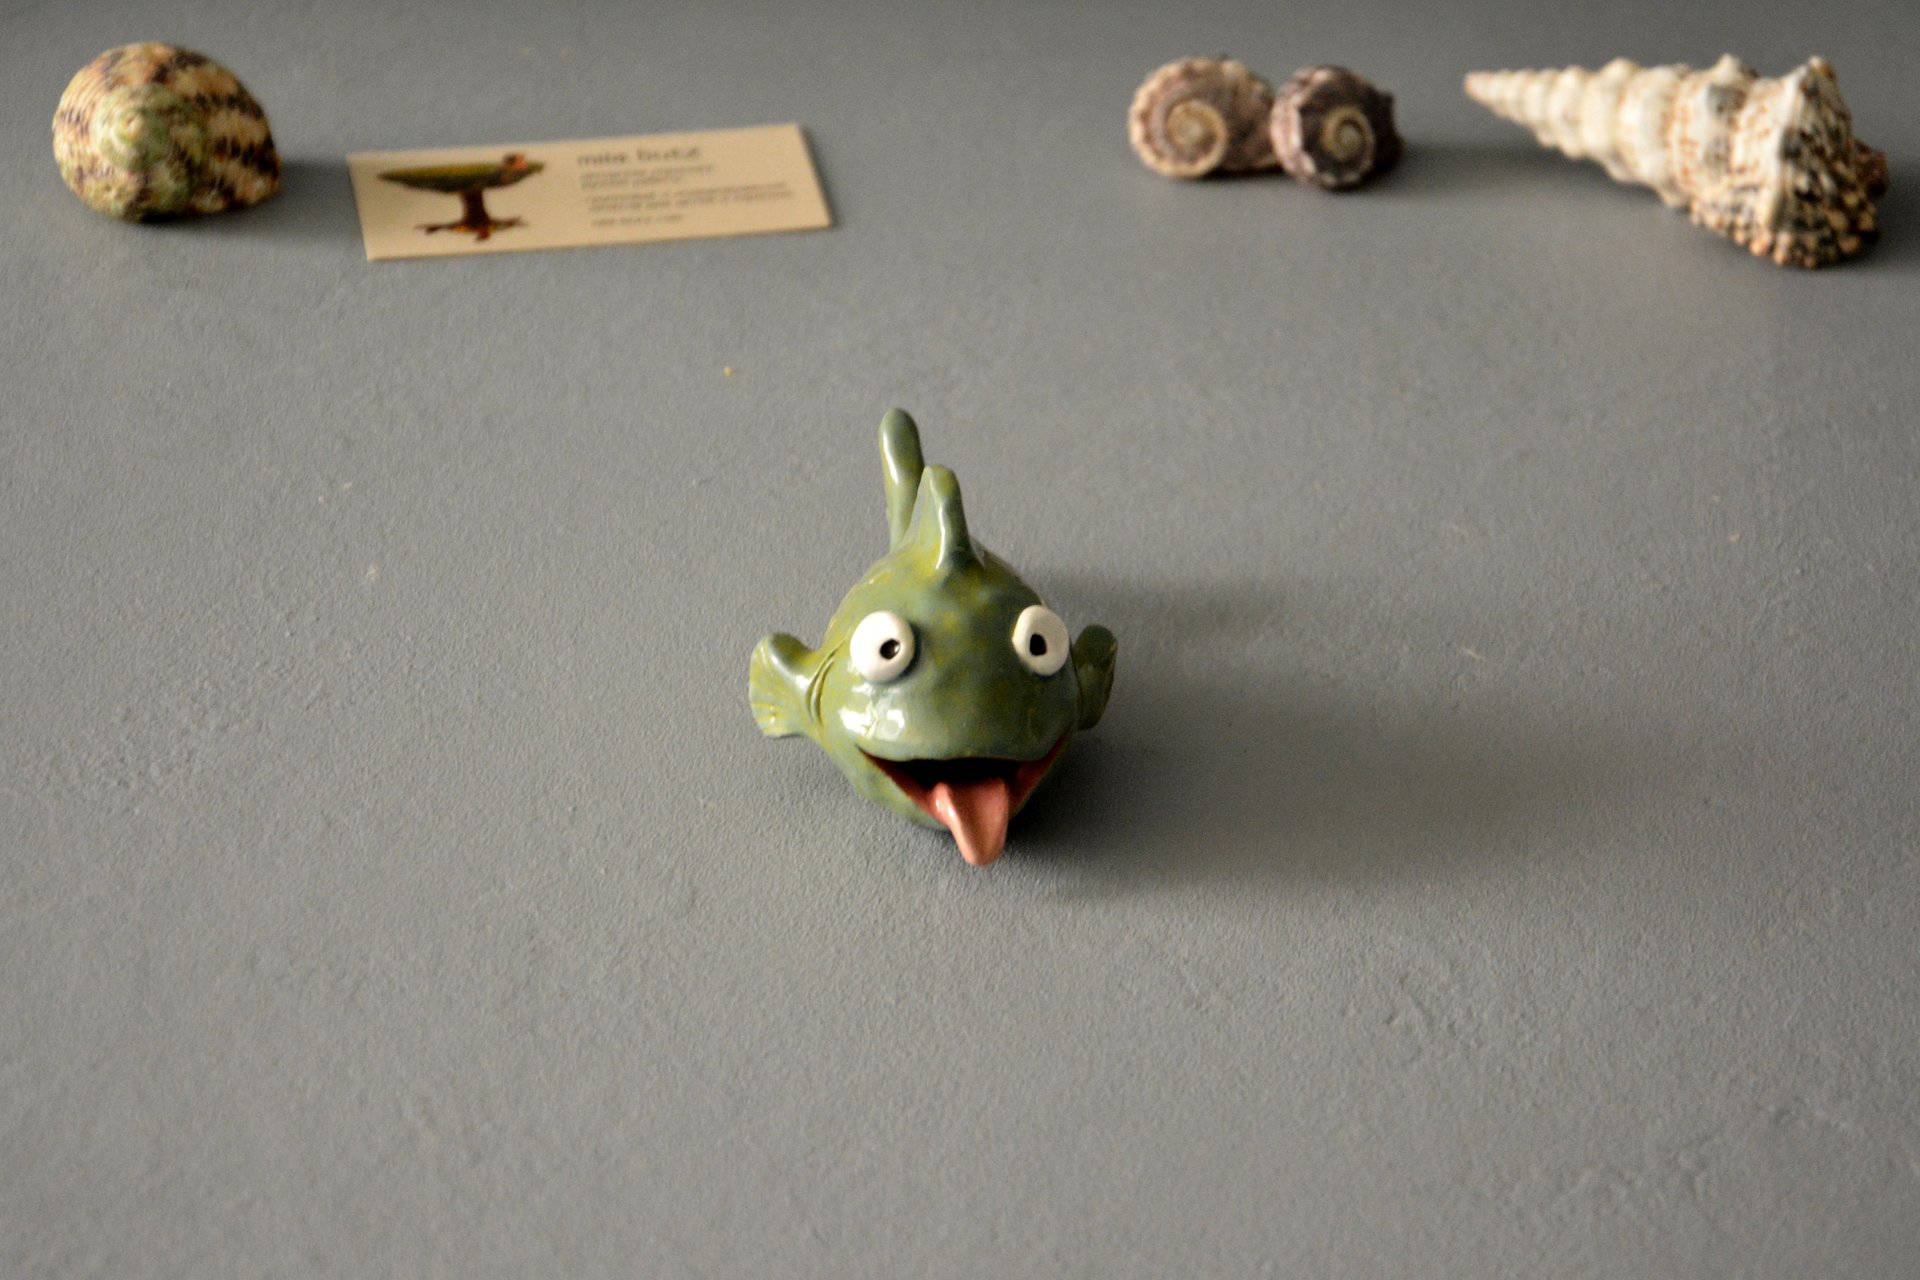 Керамическая фигурка рыбки улыбаки, длина - 12.5 см, высота - 6 см, фото 3 из 6.